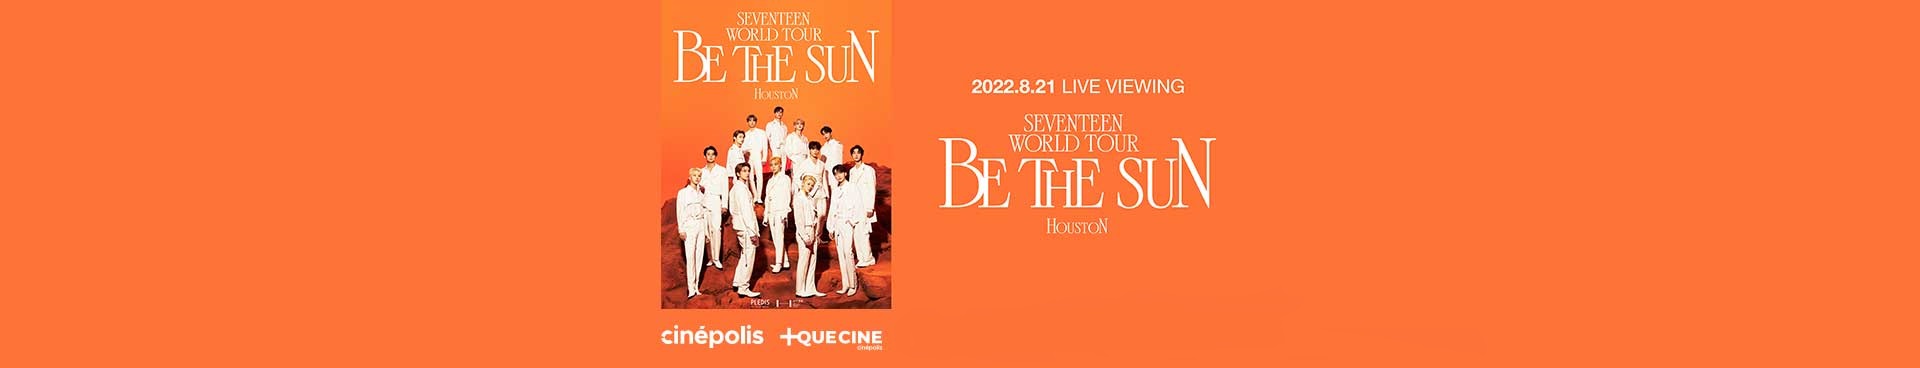 SEVENTEEN WORLD TOUR-BE THE SUN